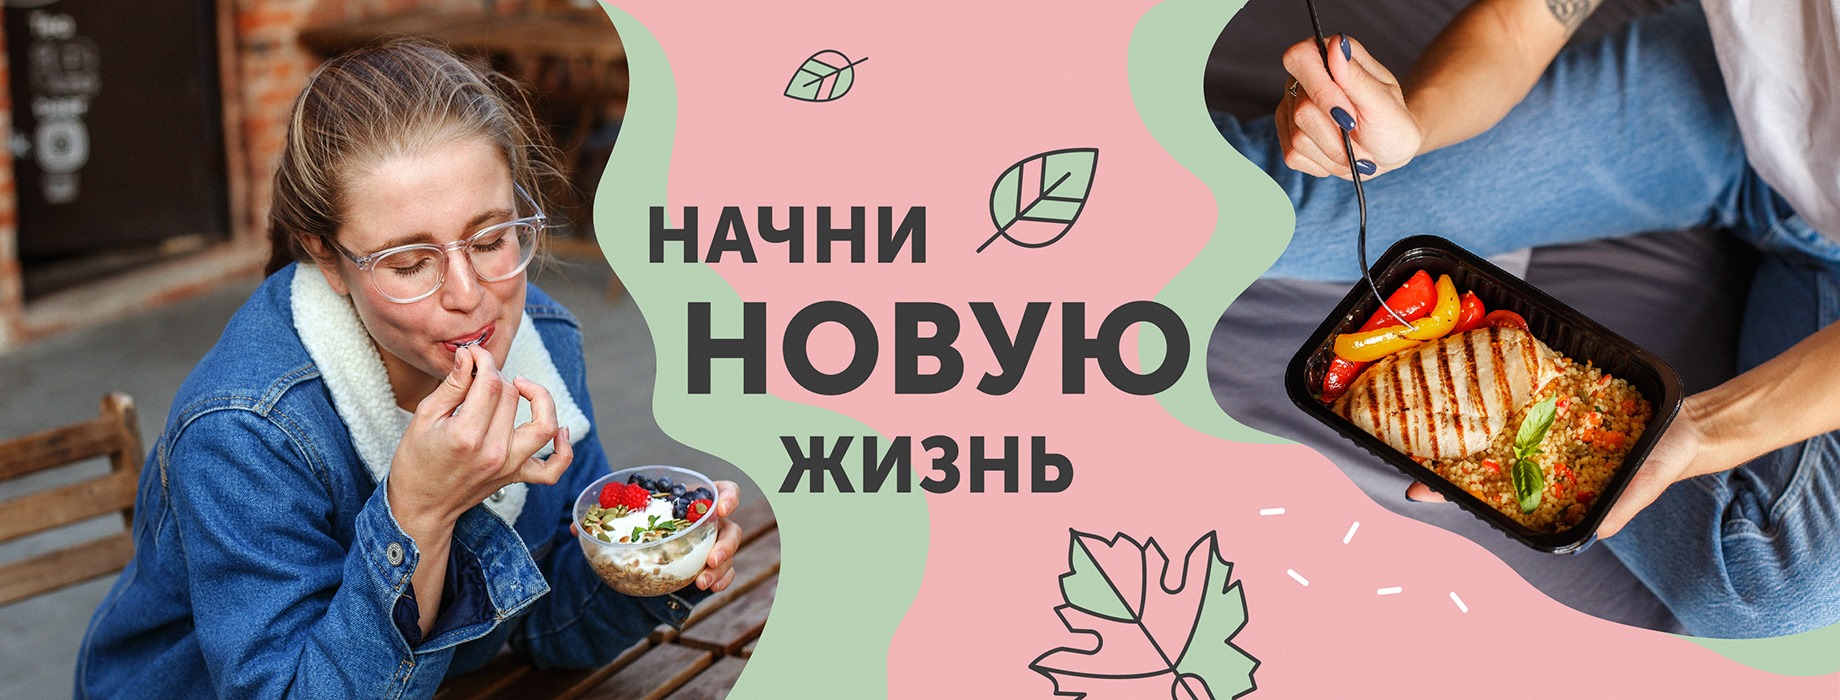 Завтраки от 350 рублей в день + кэшбек до 50%! Новинка в GrowFood!